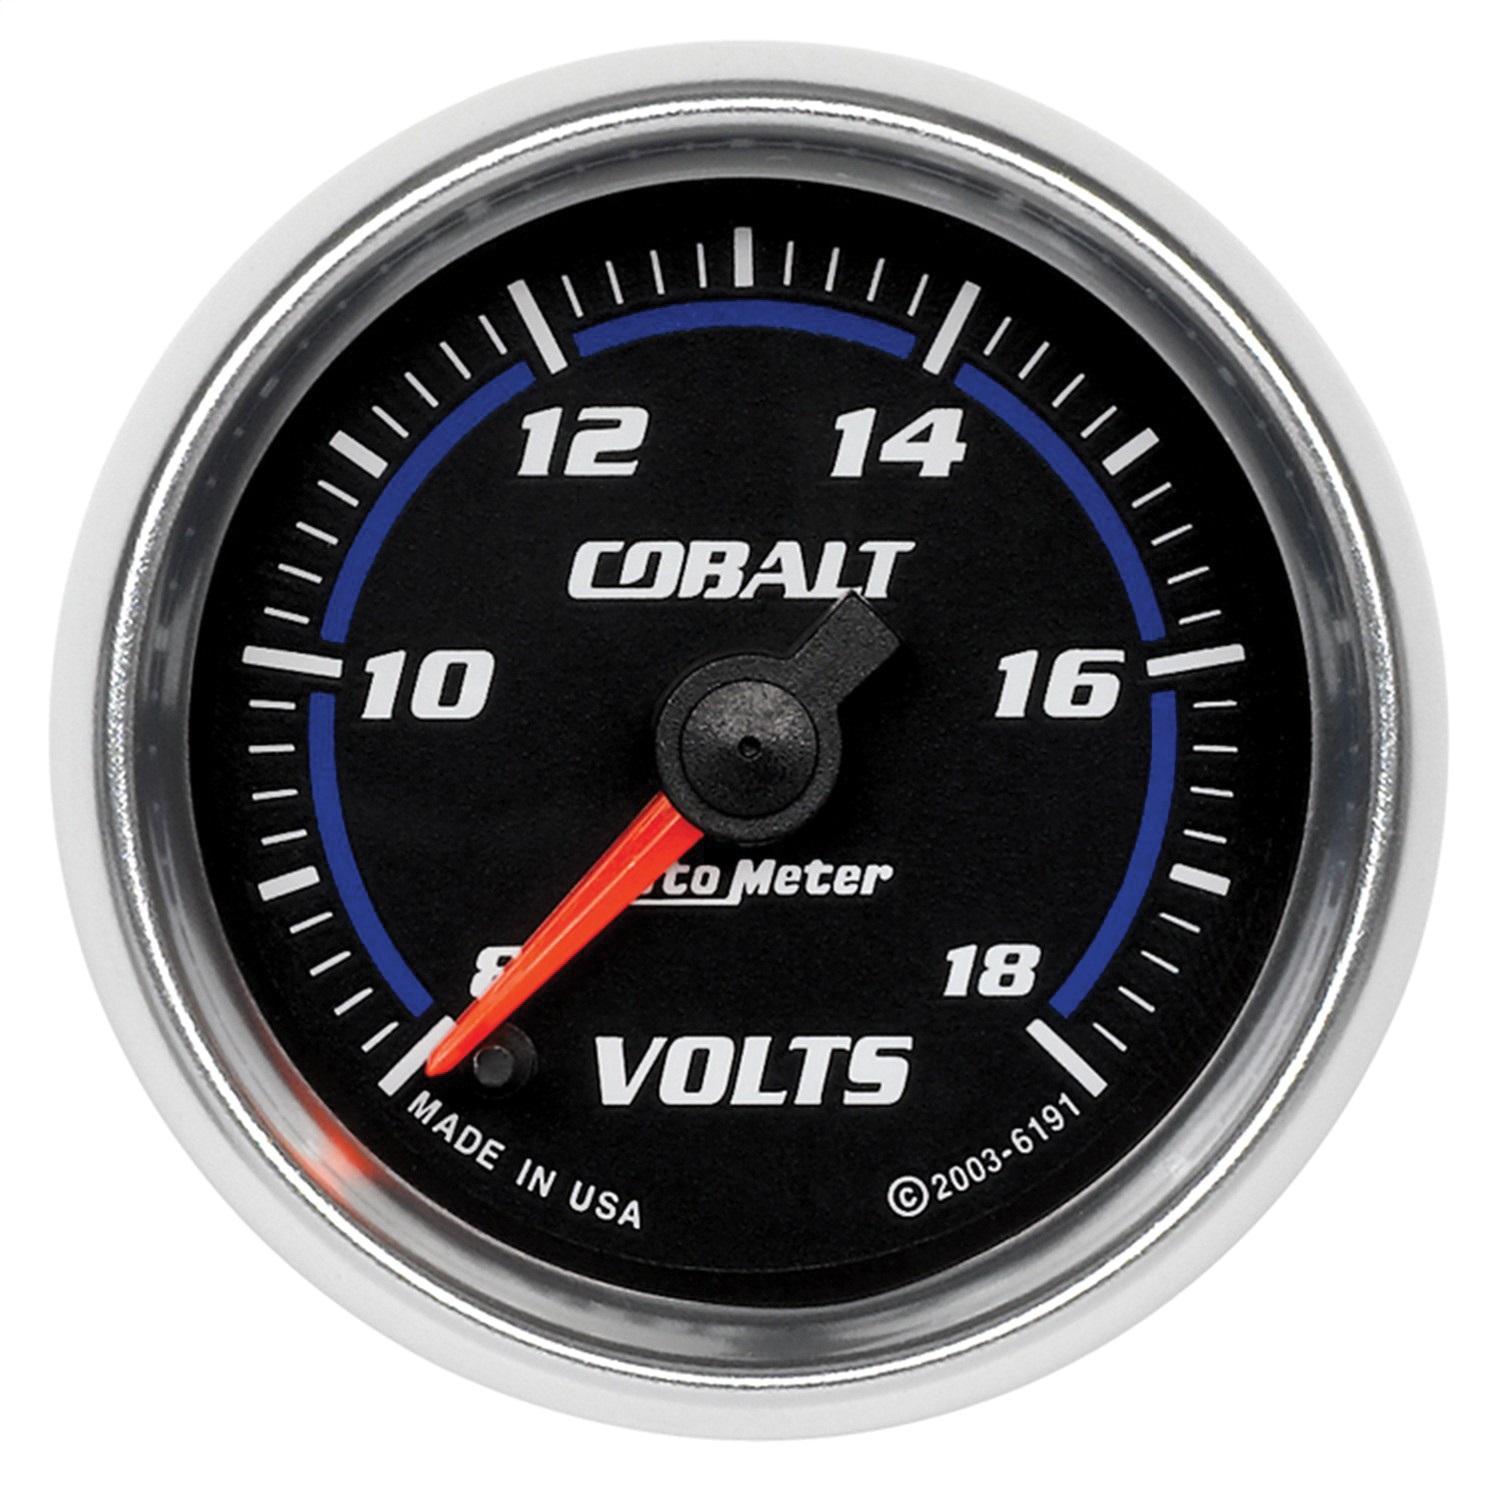 Auto Meter Auto Meter 6191 Cobalt; Electric Voltmeter Gauge